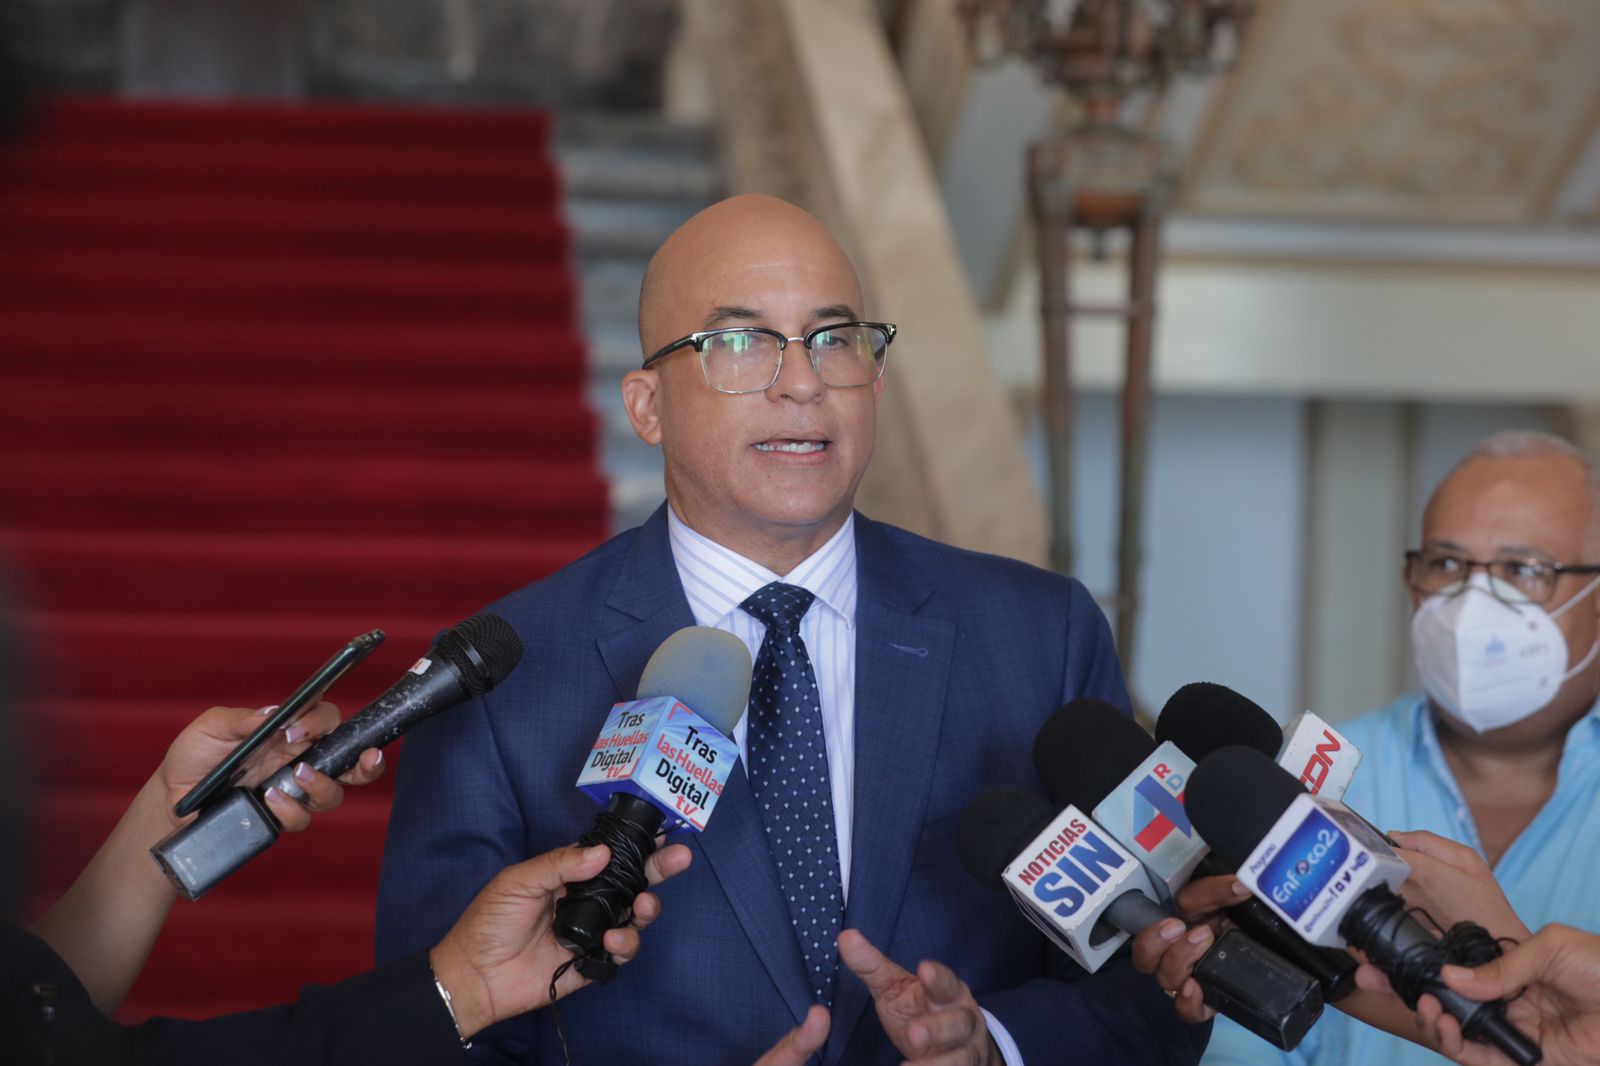 REPÚBLICA DOMINICANA: Presidente Abinader participará en Diálogo Nacional con propuestas concretas